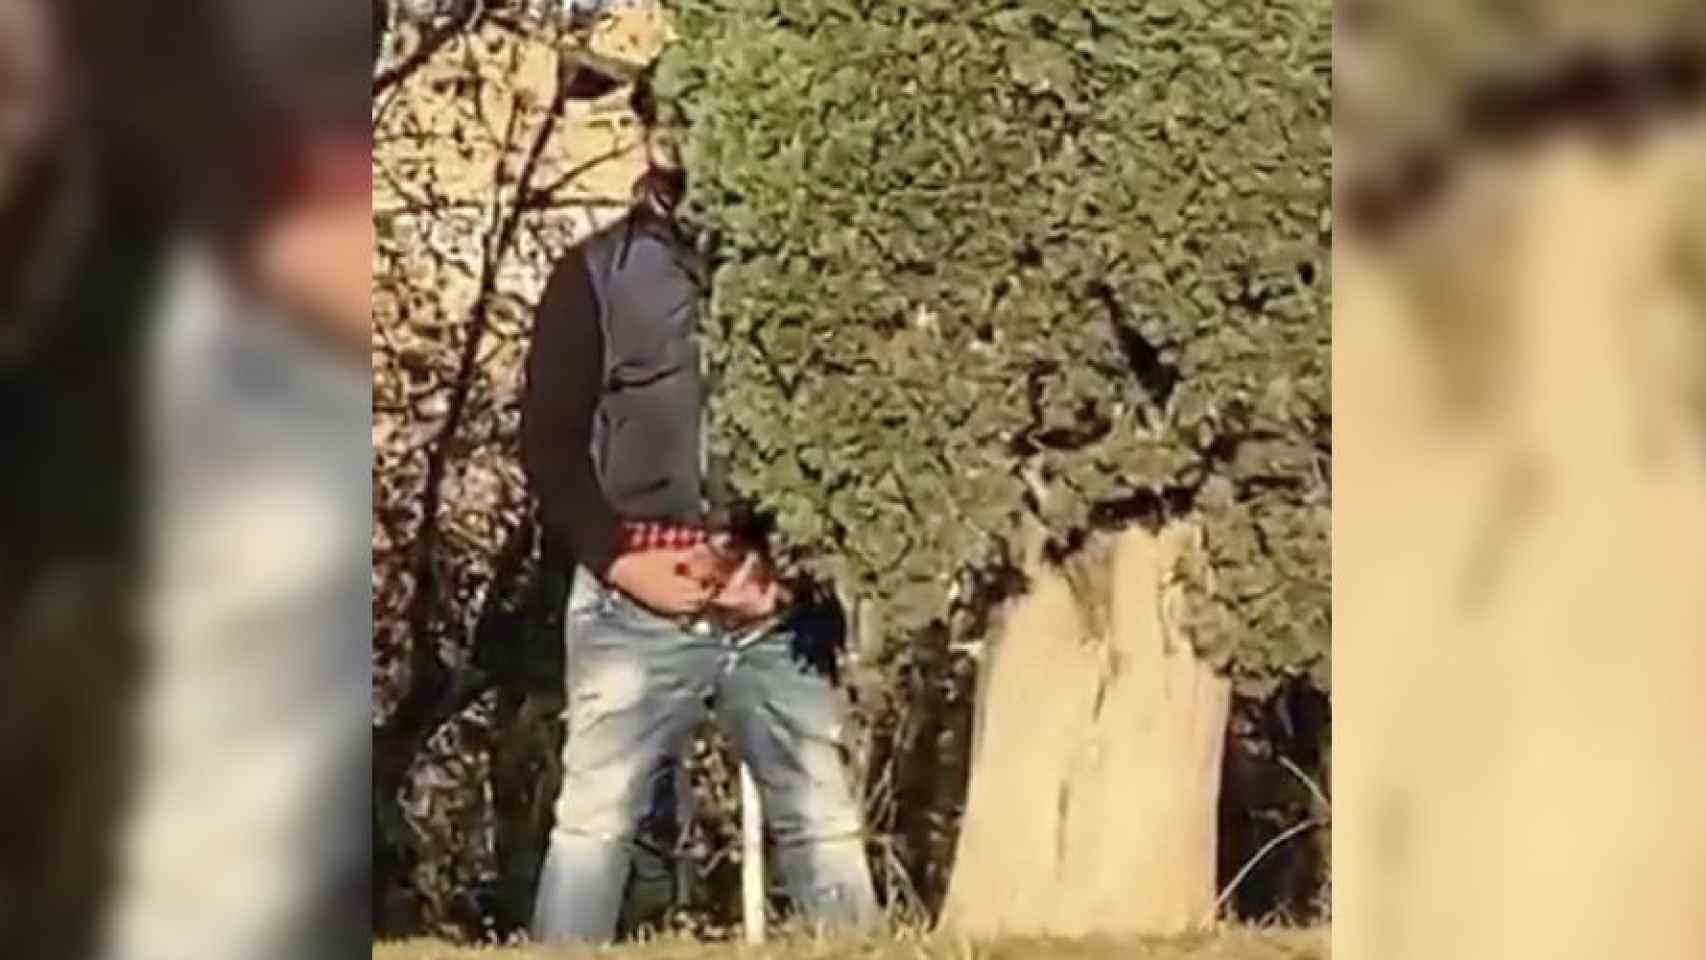 Captura de pantalla del vídeo del hombre masturbándose frente a unas menores en un parque de Barcelona / TWITTER - @floreroroto